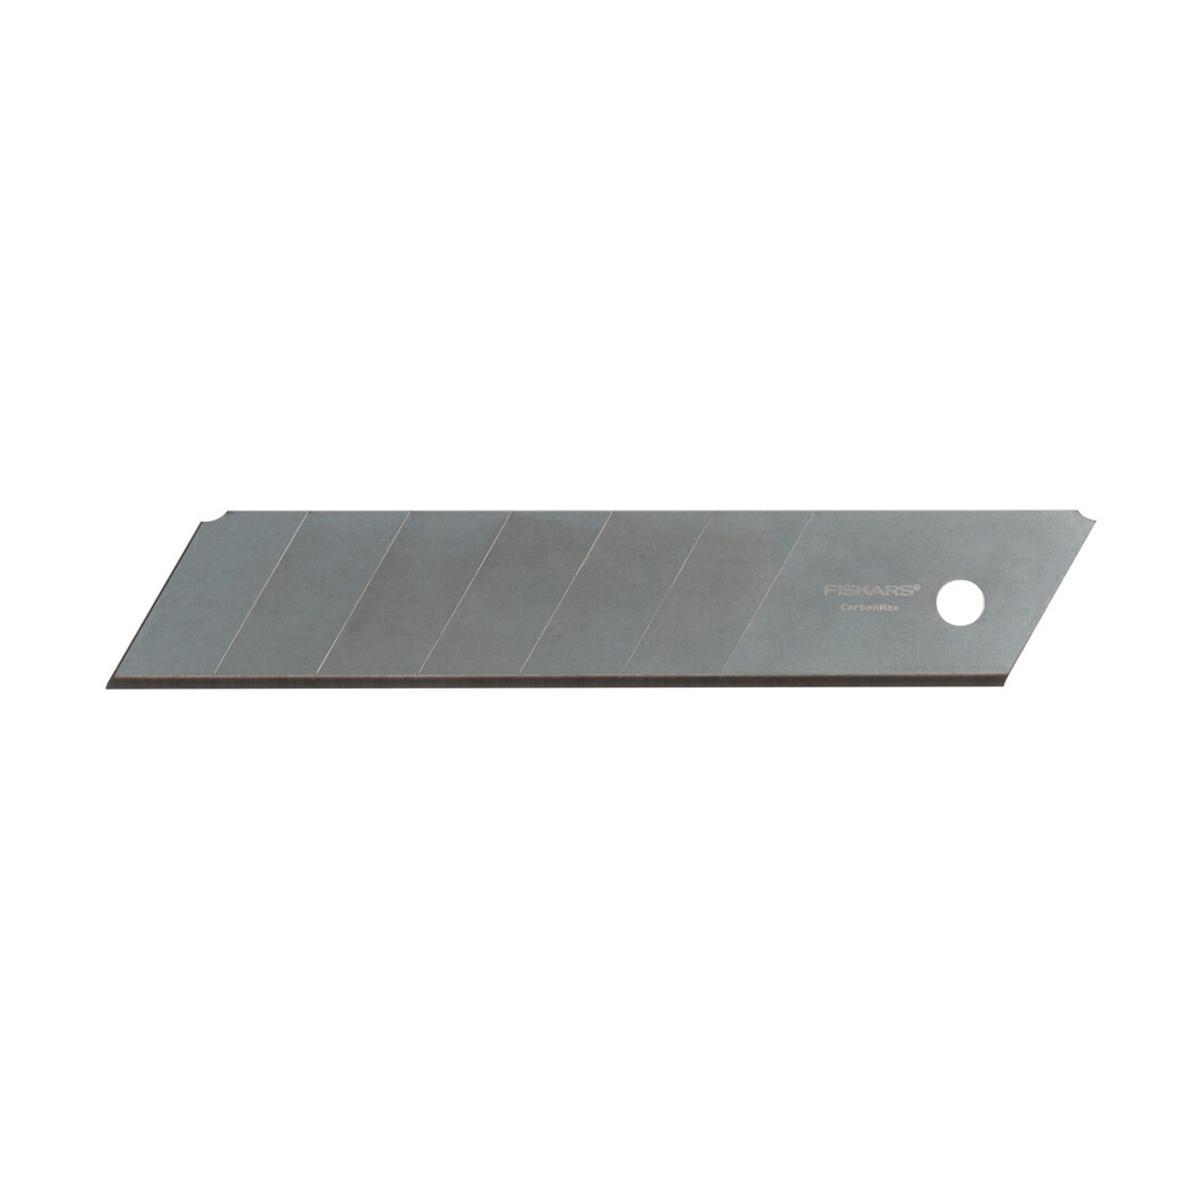  для строительного ножа Fiskars Carbonmax 1027233 25 мм 5 шт по .